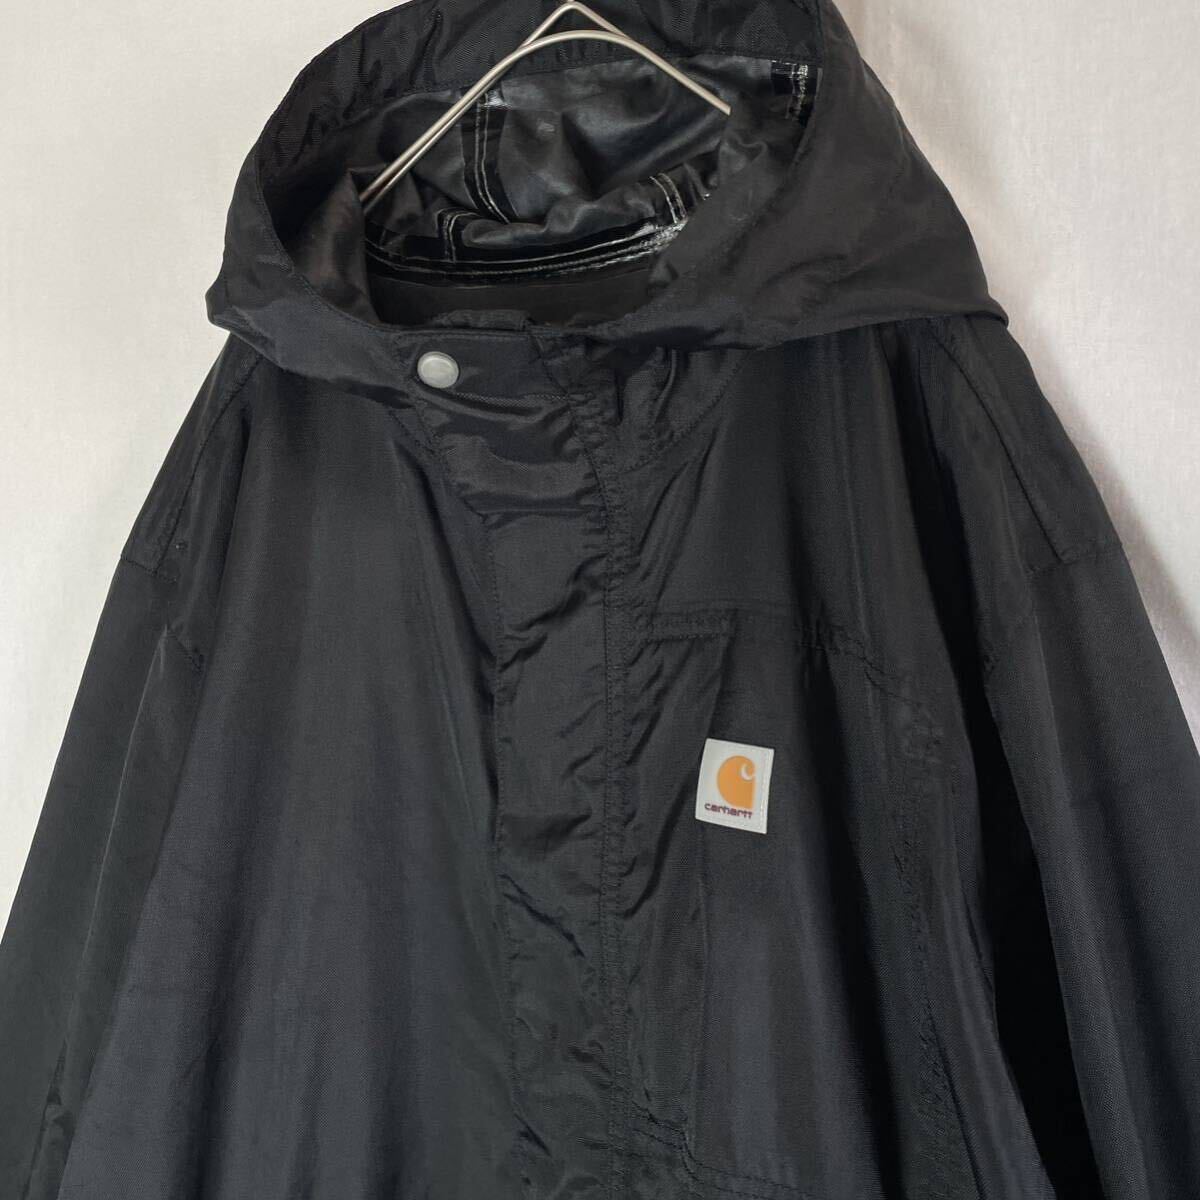  Carhartt nylon jacket old clothes black XL-R size 